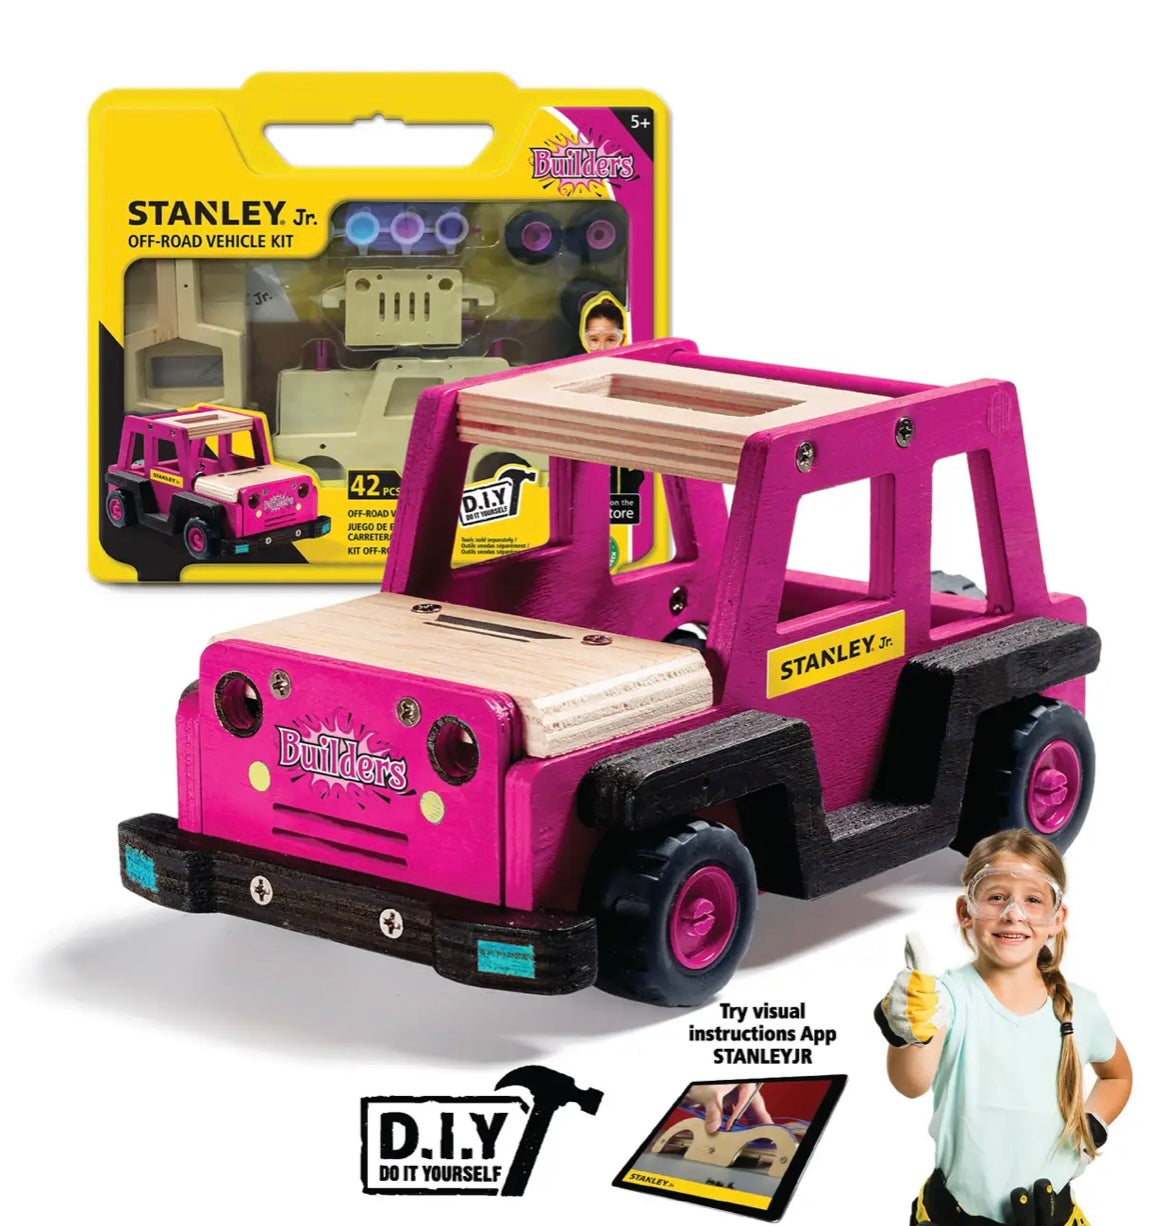 Stanley DIY Off-Road vehicle kit